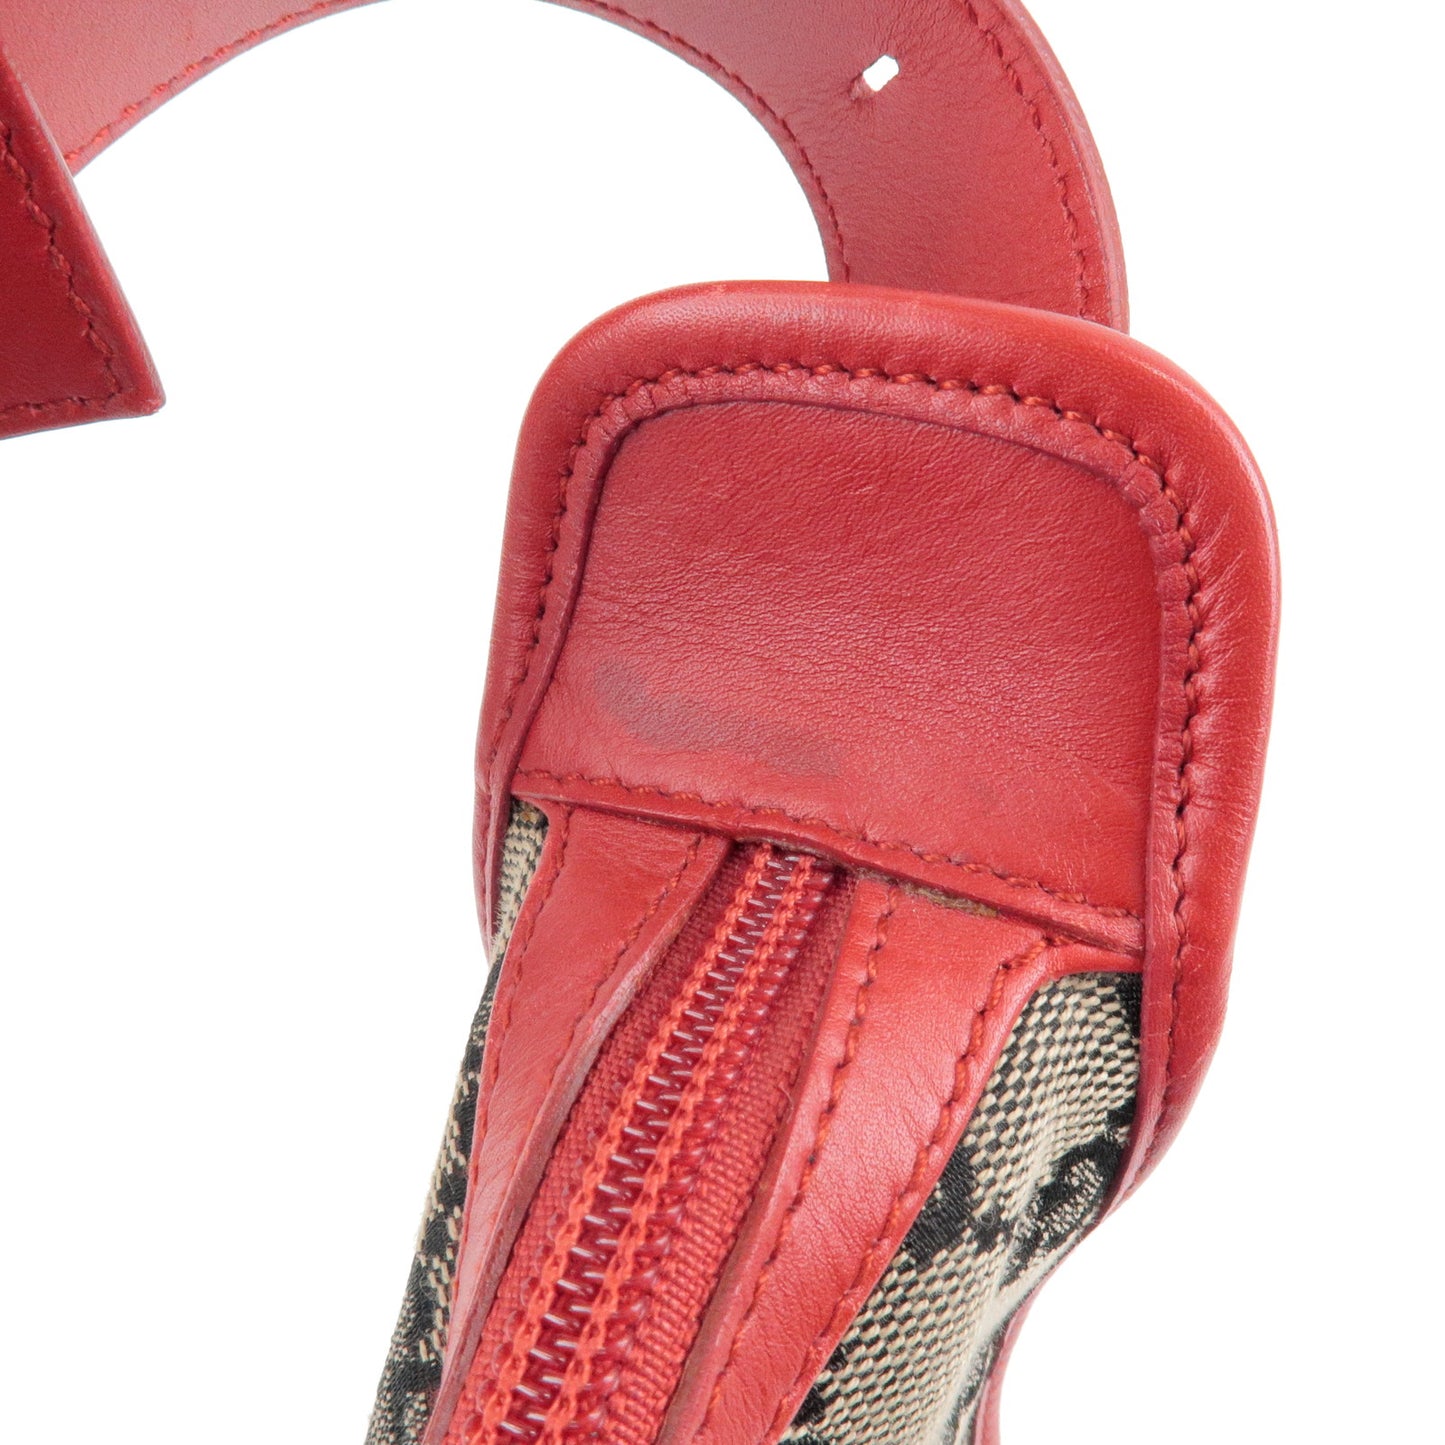 GUCCI GG Canvas Leather Shoulder Bag Beige Black Red 001.4205